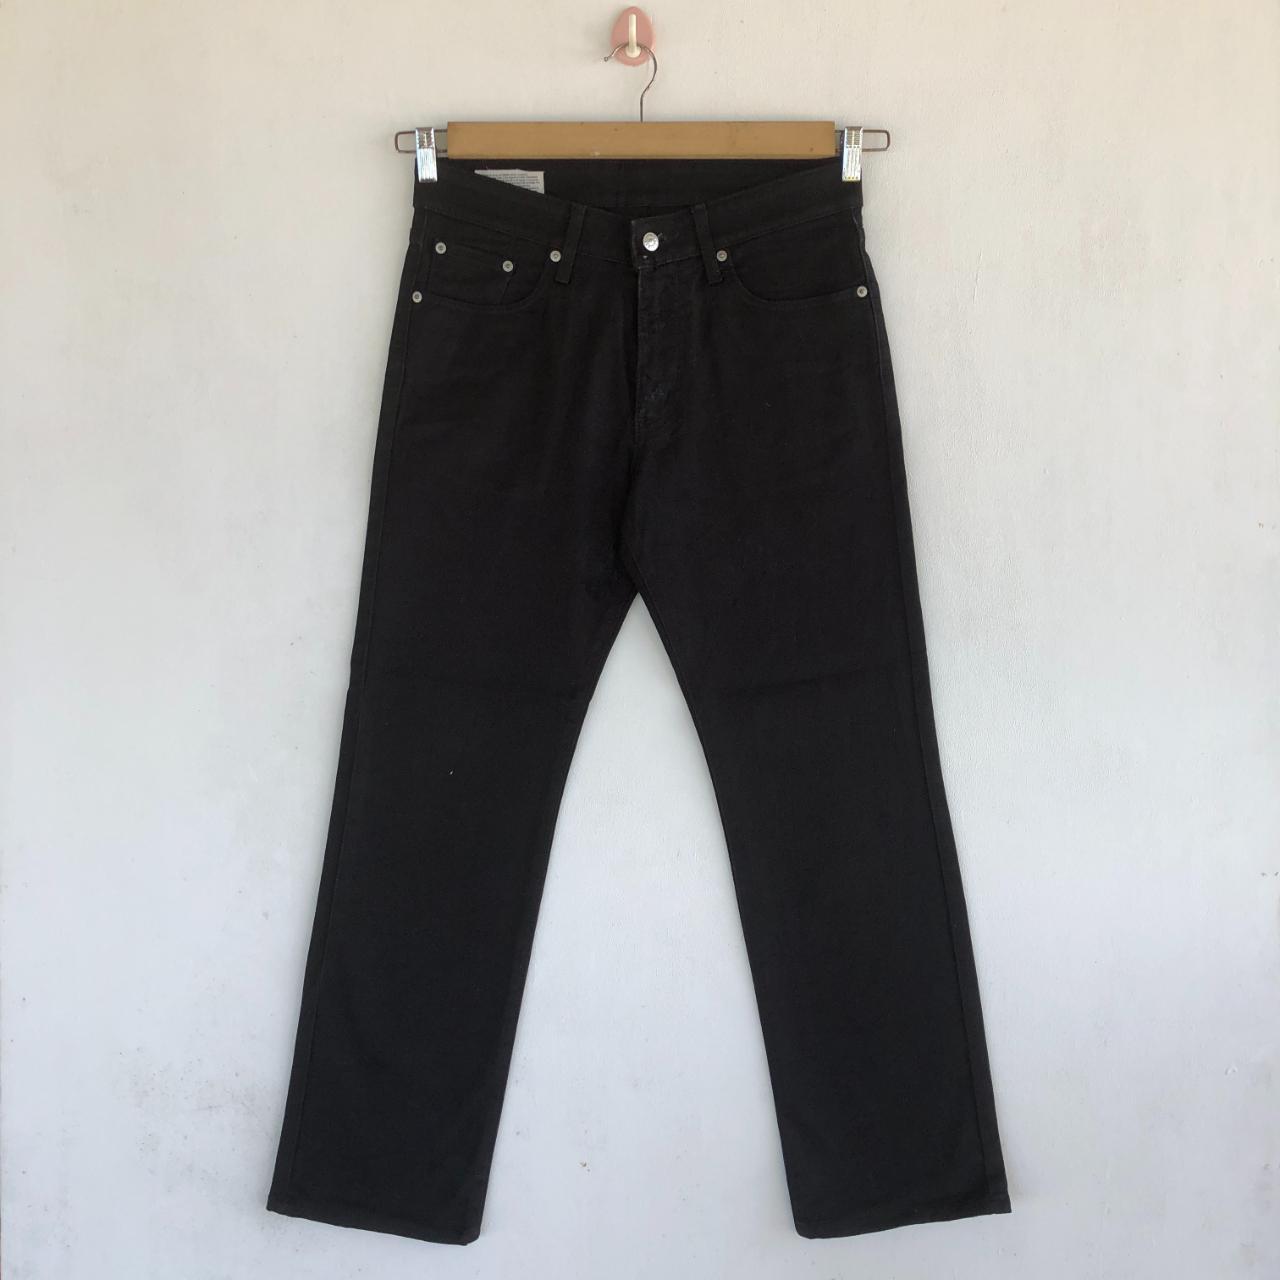 Vintage Super Black Japanese Jeans Denim... - Depop